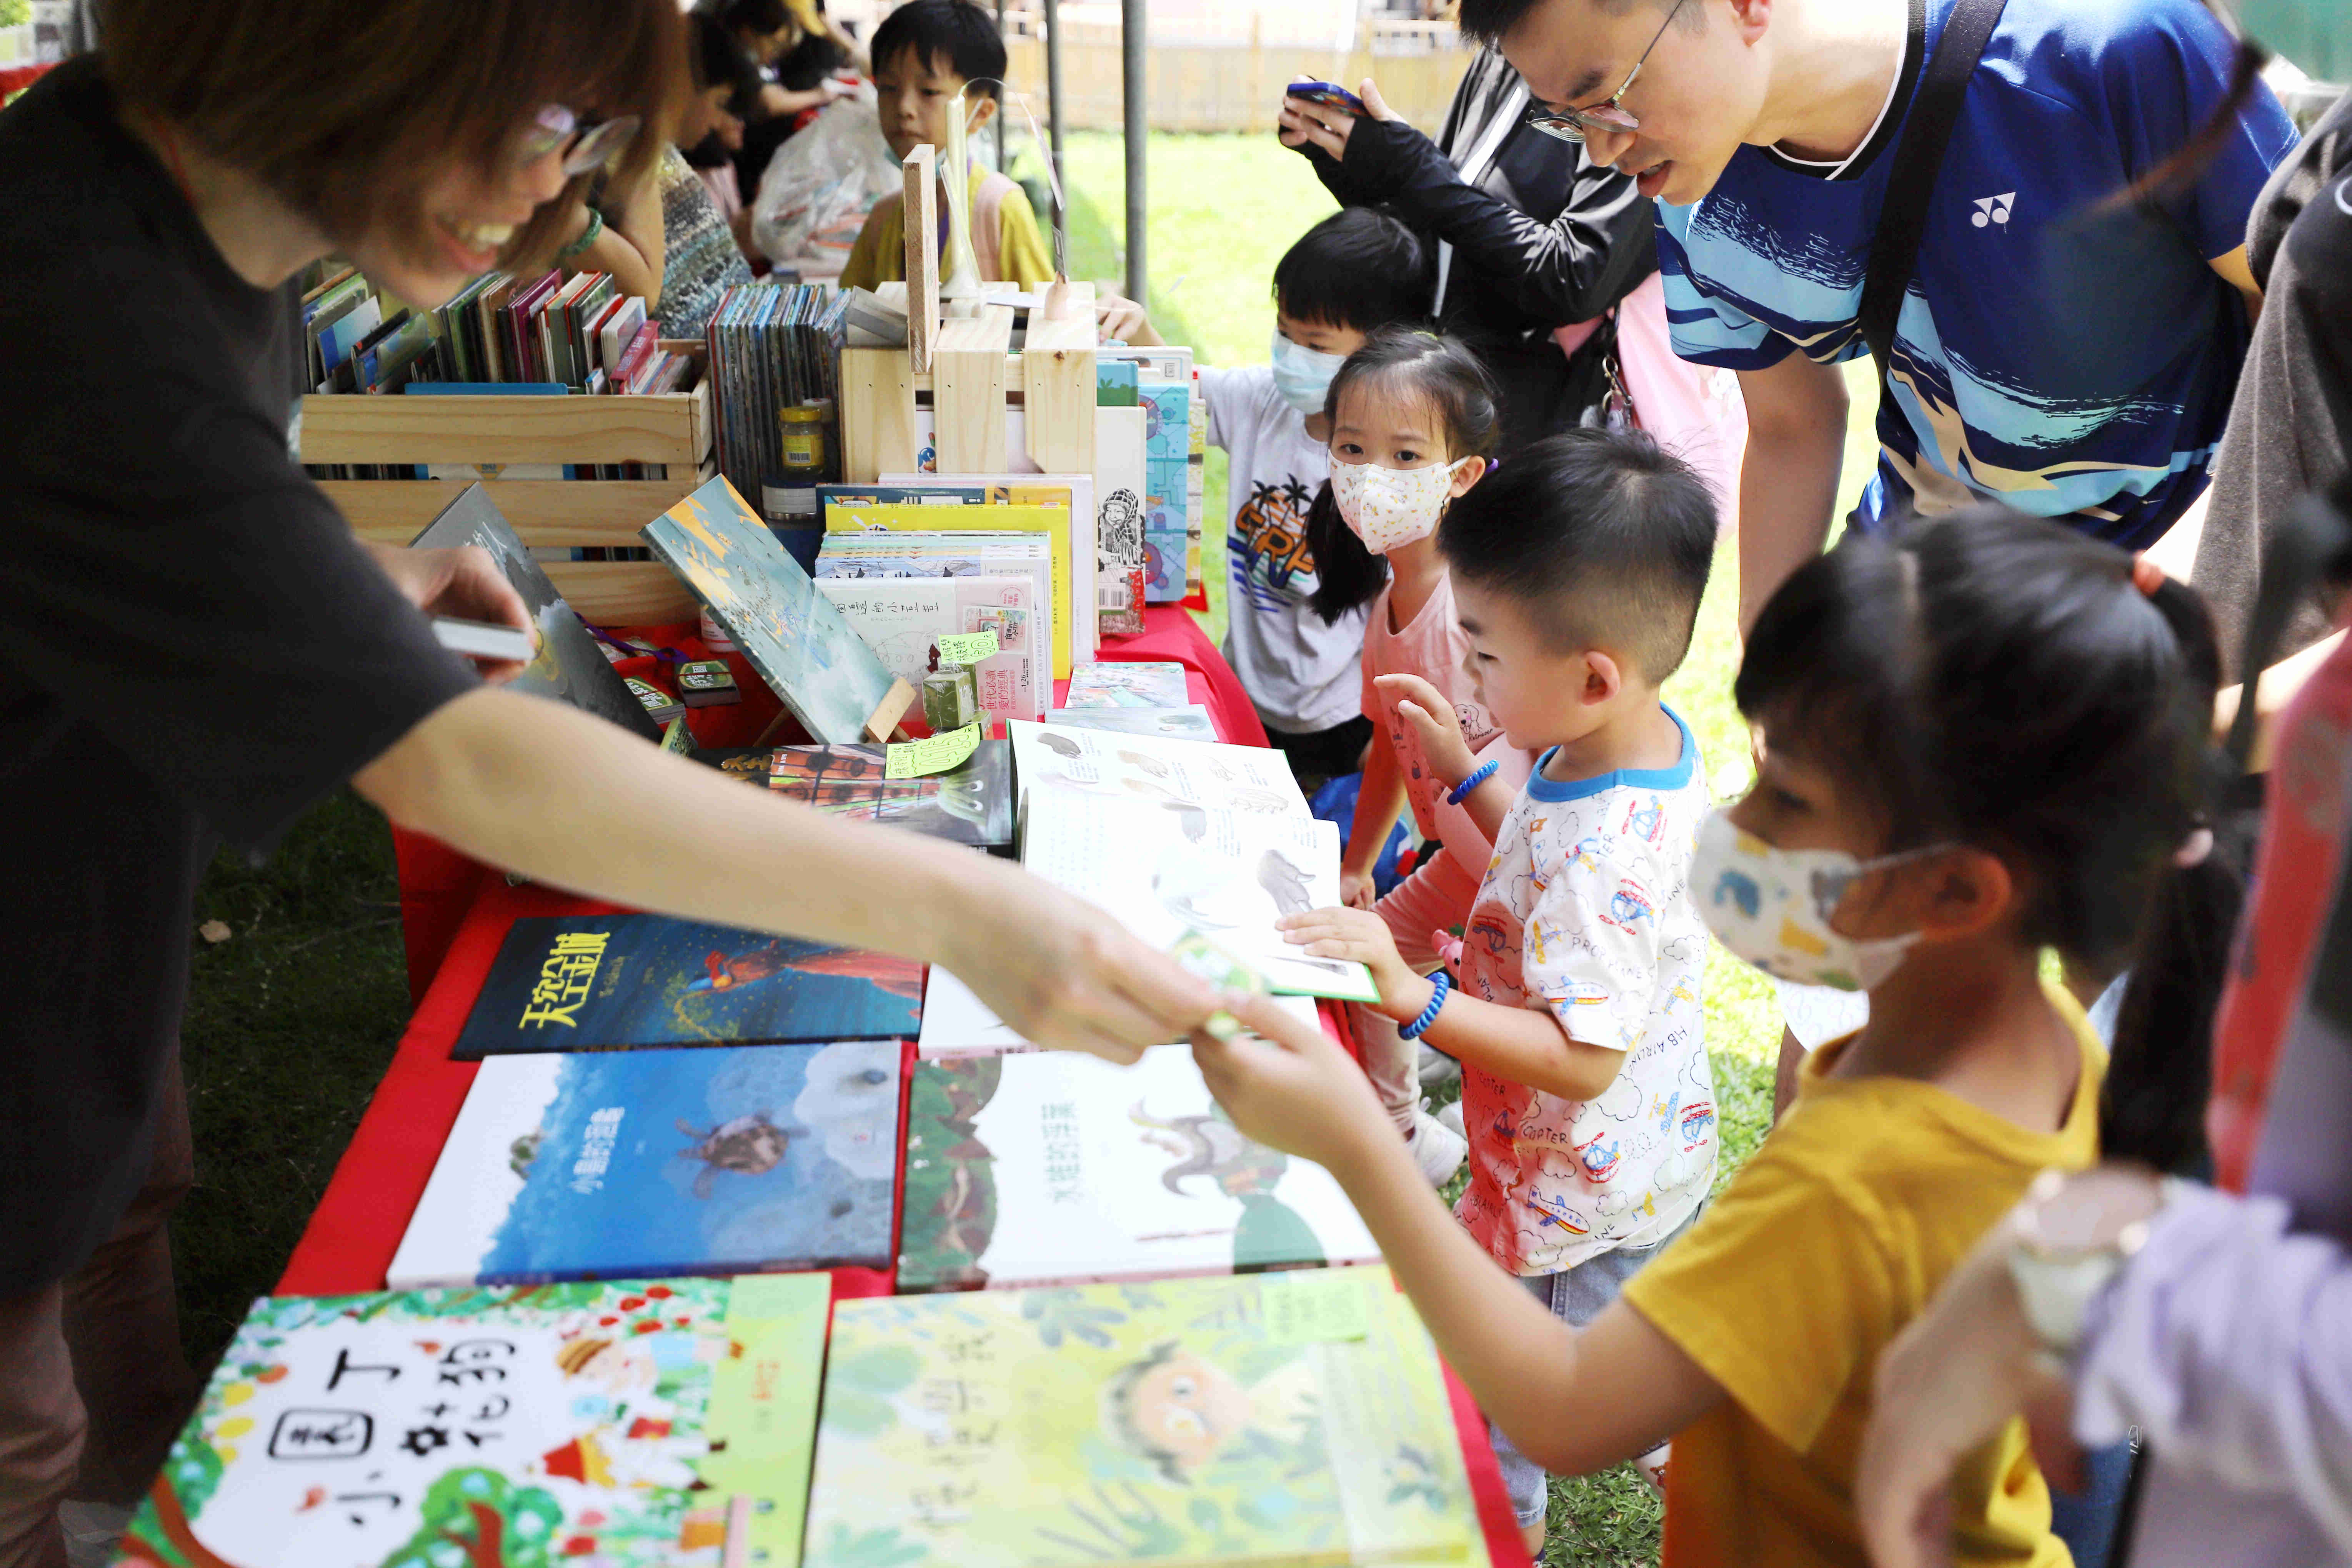 创新书市「读字乐园玩书展」于新北市板桥放送所登场，吸引许多家长带小朋友体验「欢乐玩读」的乐趣。图/文化部提供